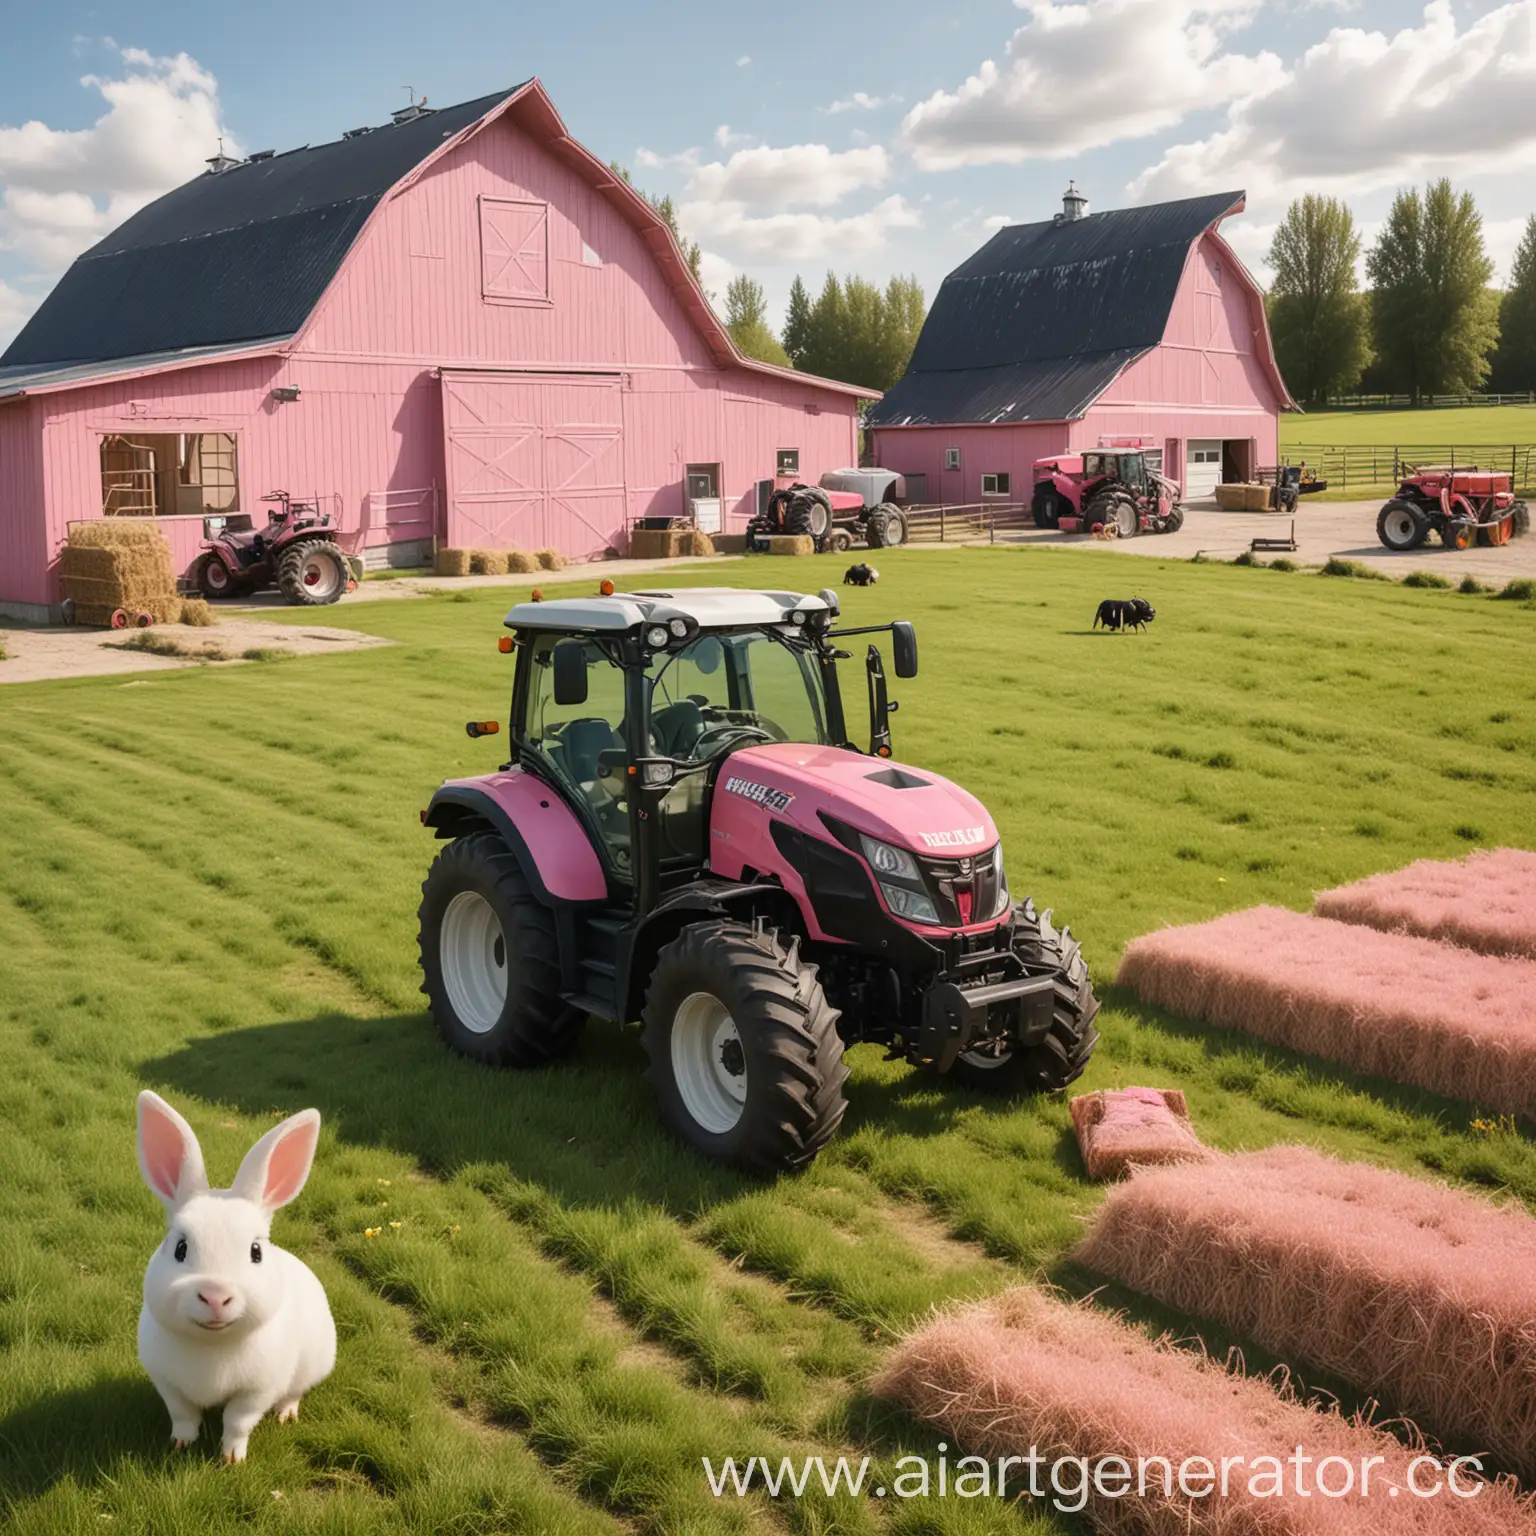 Светло-розовая трава, на заднем фоне амбар и сено, трактор valtra, мультяшная коровка, пчелка и кролик